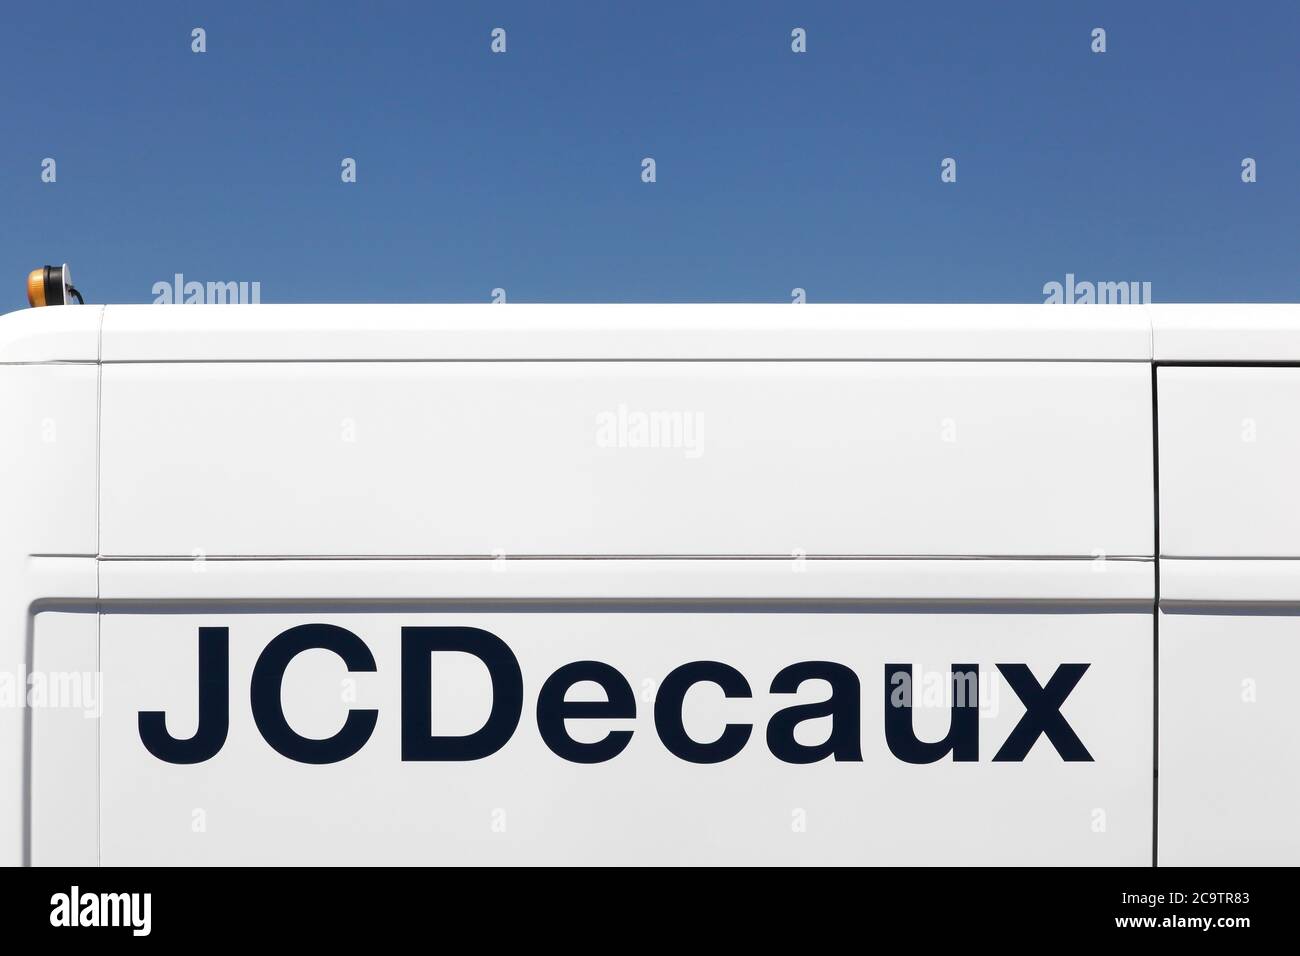 DECINES, Francia - 13 giugno 2019: JCDecaux è una multinazionale con sede in Francia, conosciuta per i suoi sistemi di pubblicità bus-stop, cartelloni Foto Stock